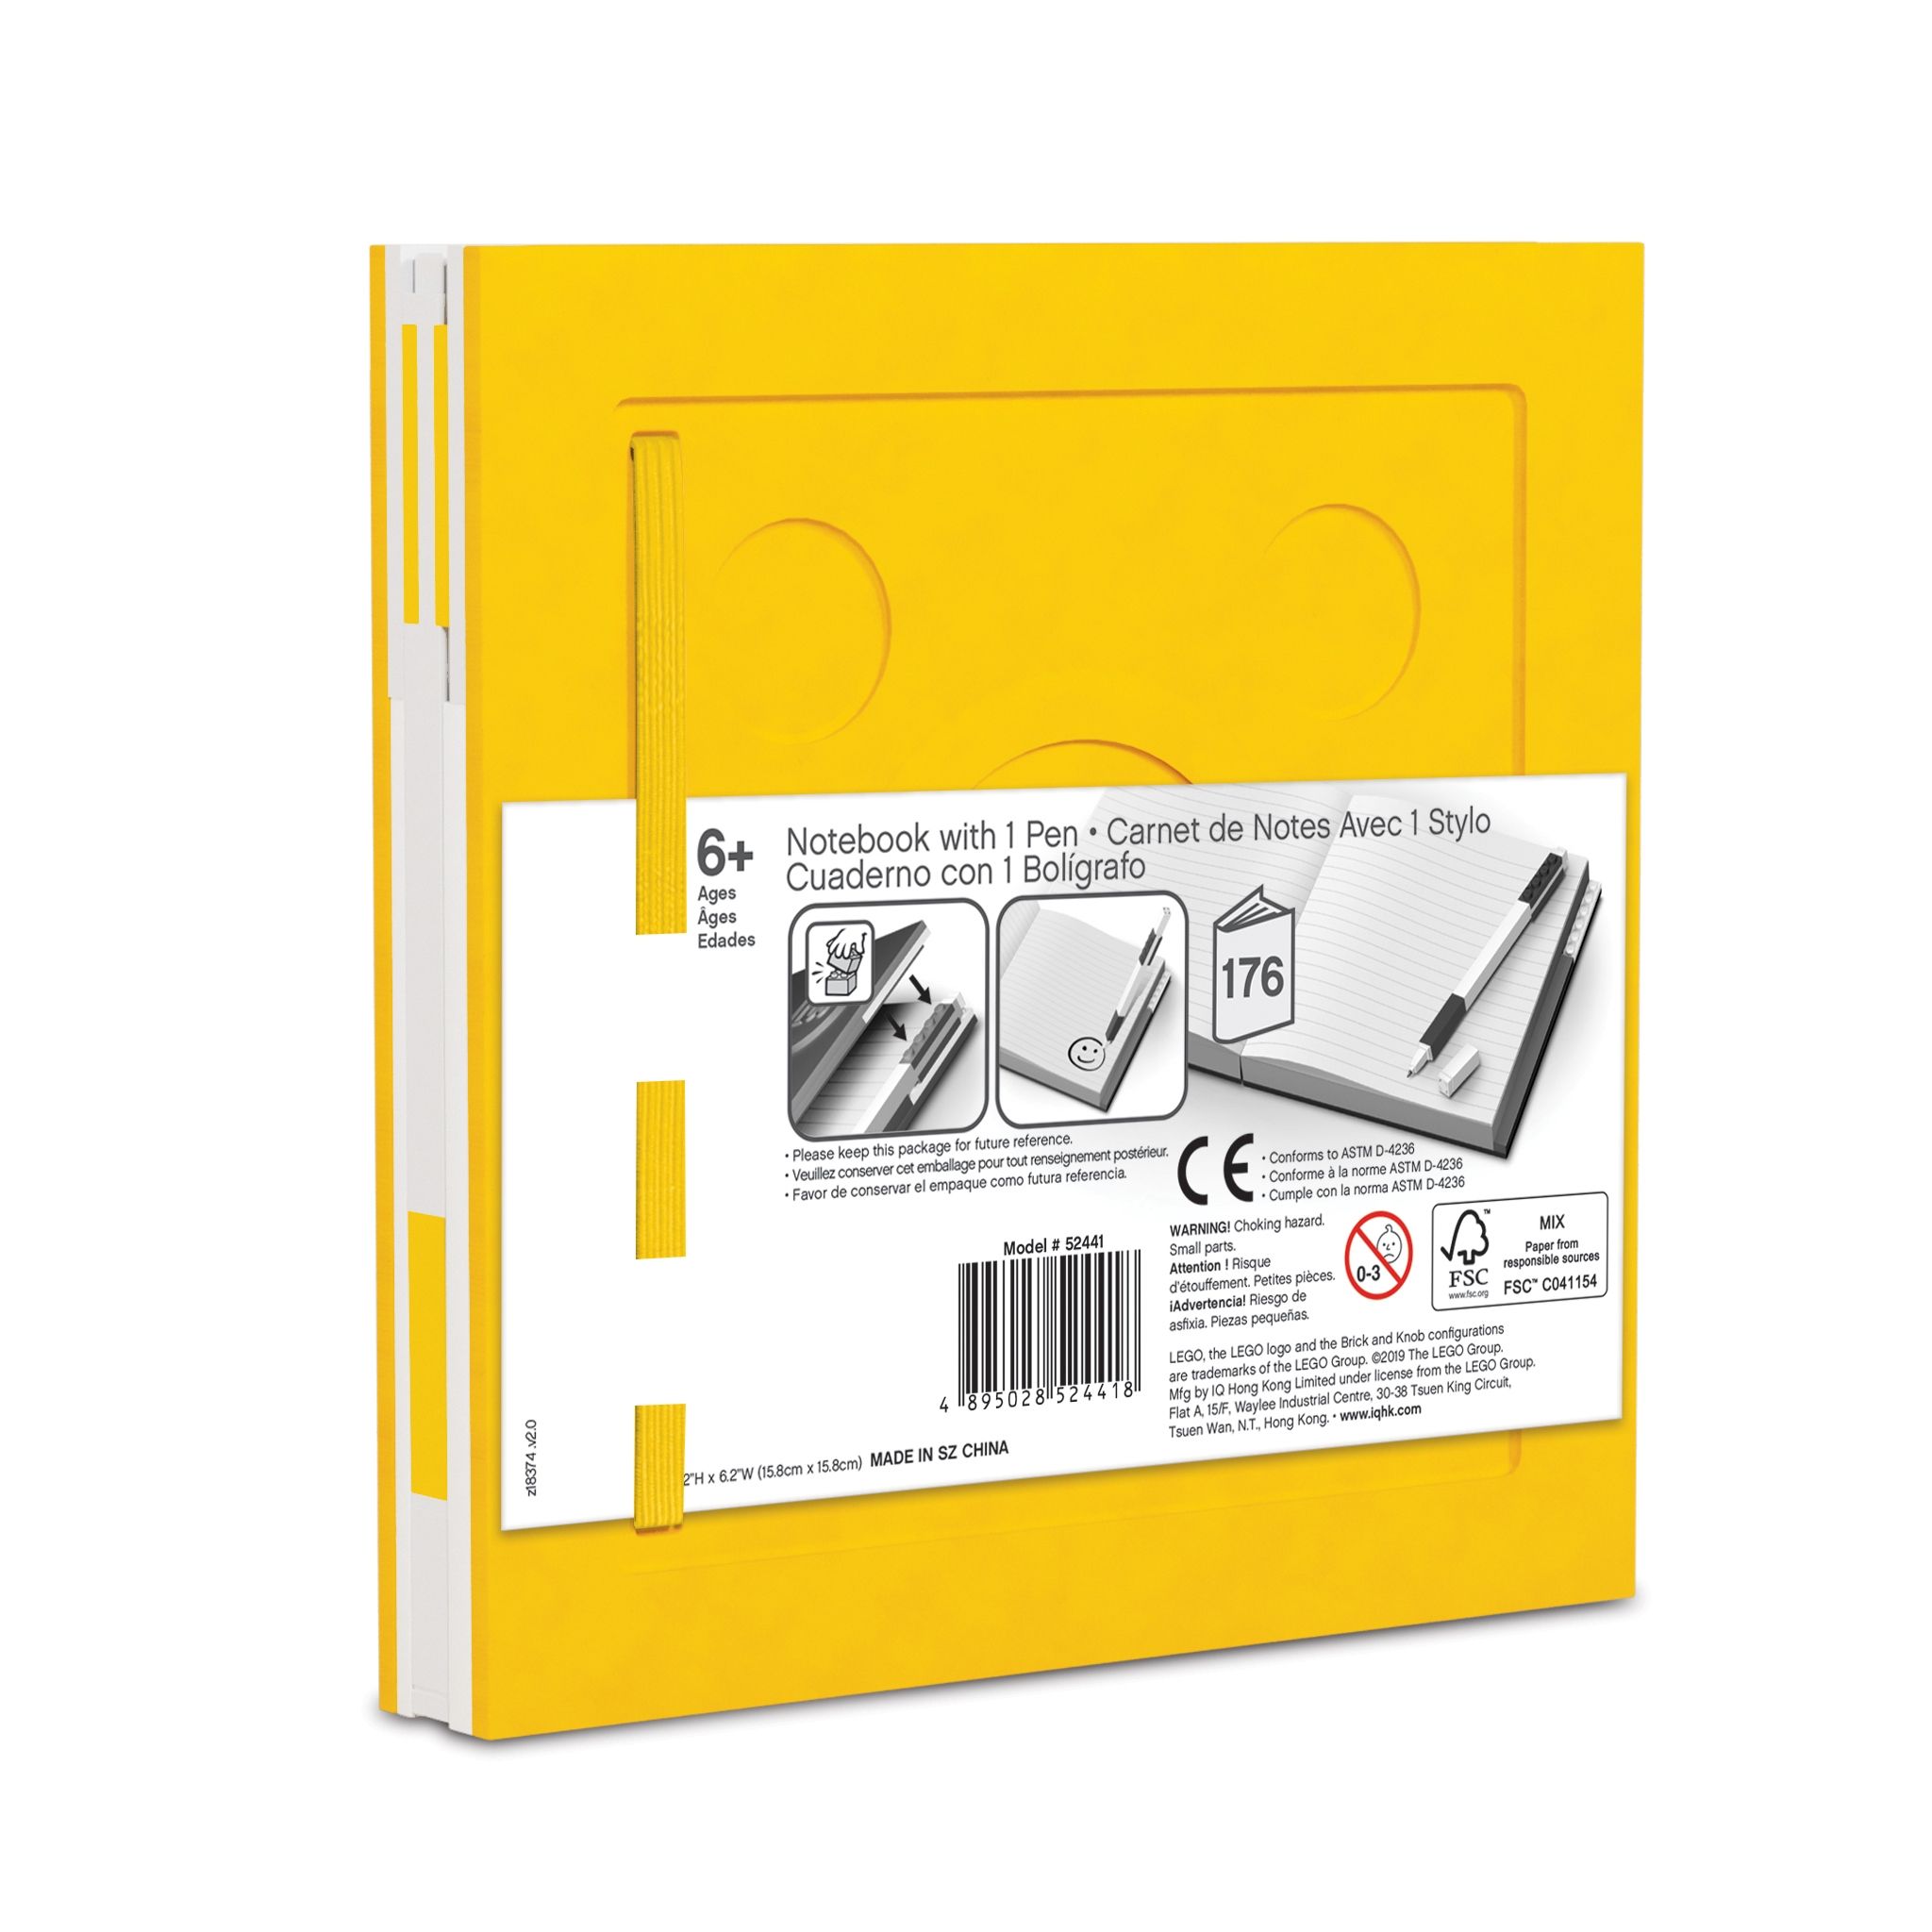 LEGO Gear 5007241 Verschließbares Notizbuch mit Gelschreiber in Gelb LEGO_5007241_alt2.jpg